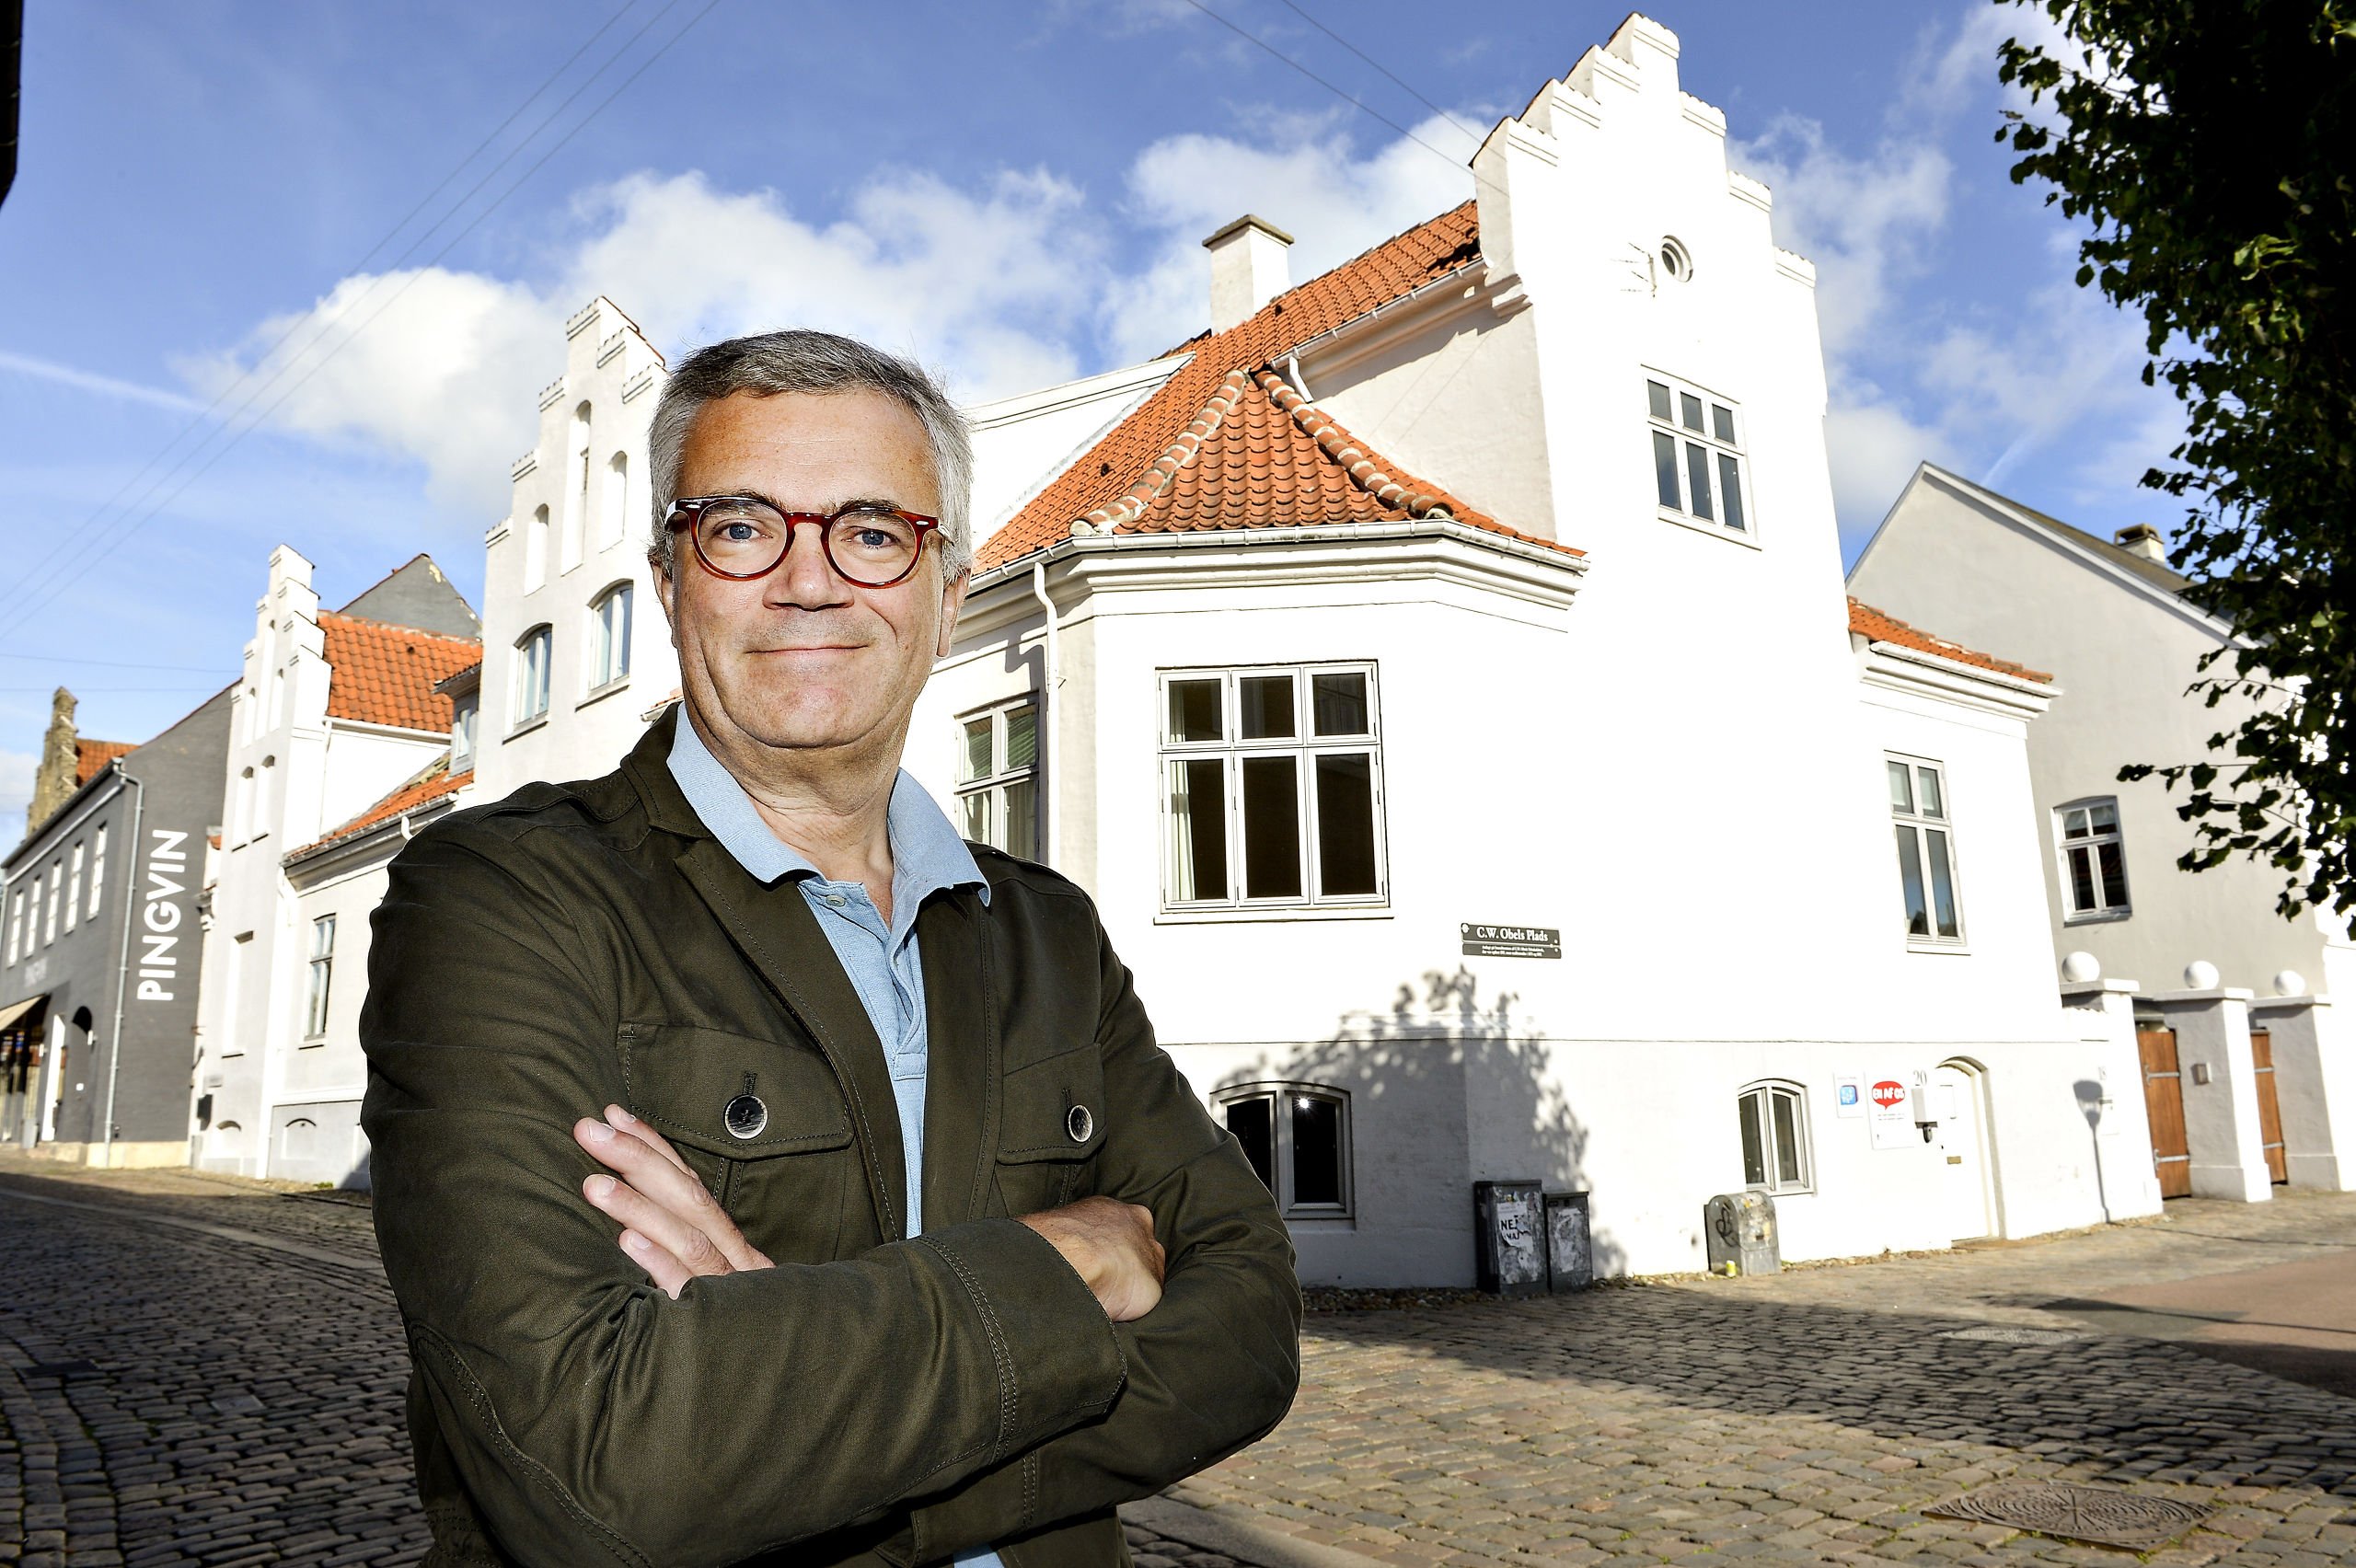 Formand for fond: Giv folk en grund til at rejse til Aalborg